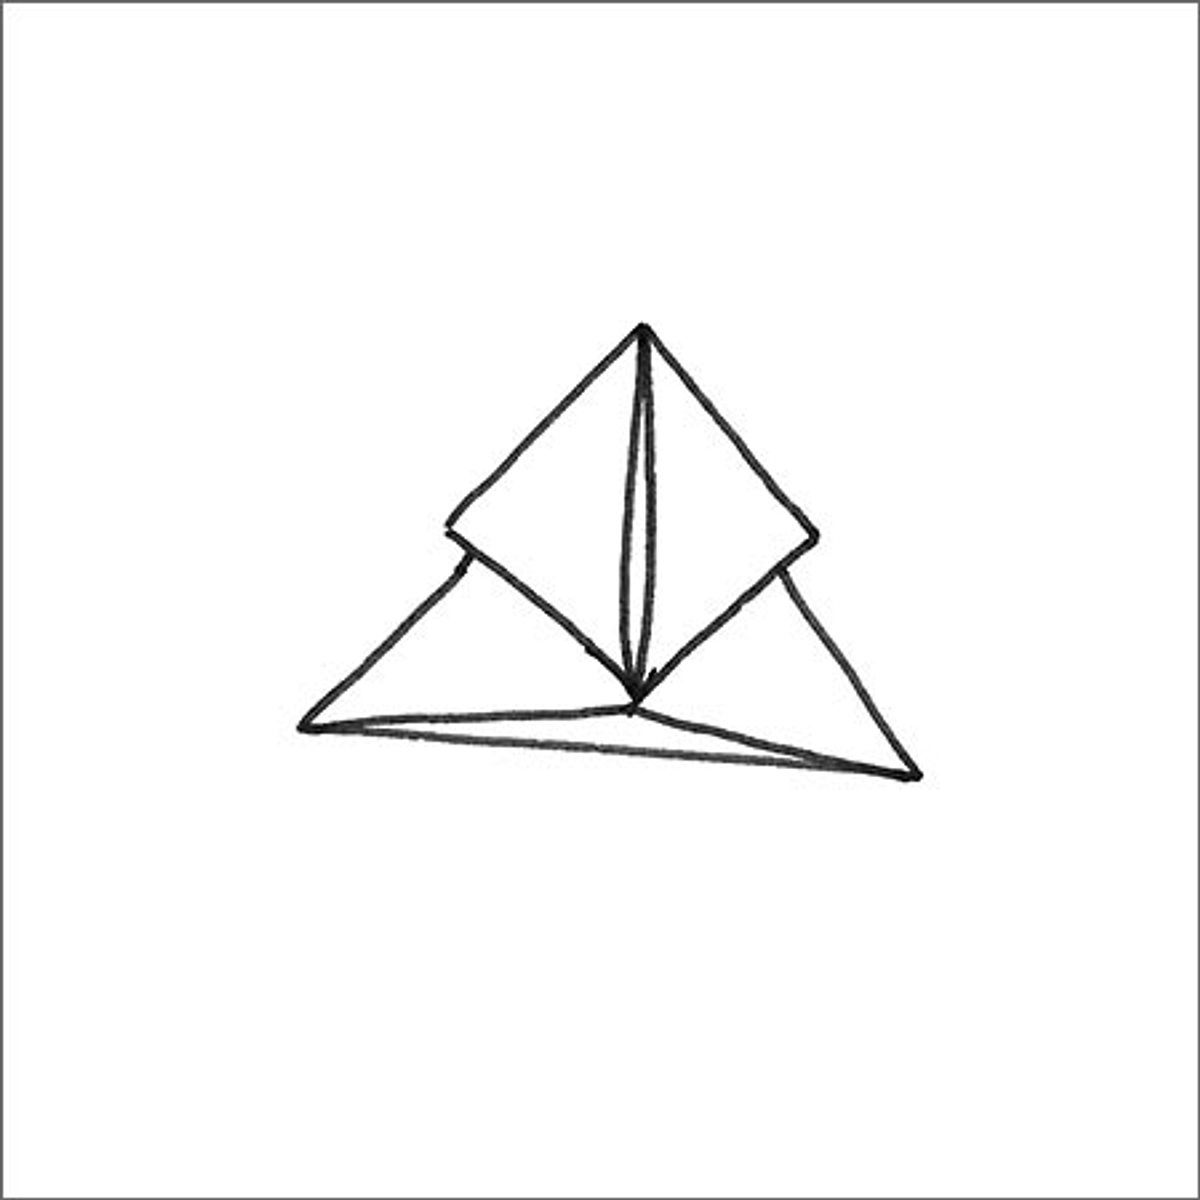 Origami-Schmetterling - Schritt 4: